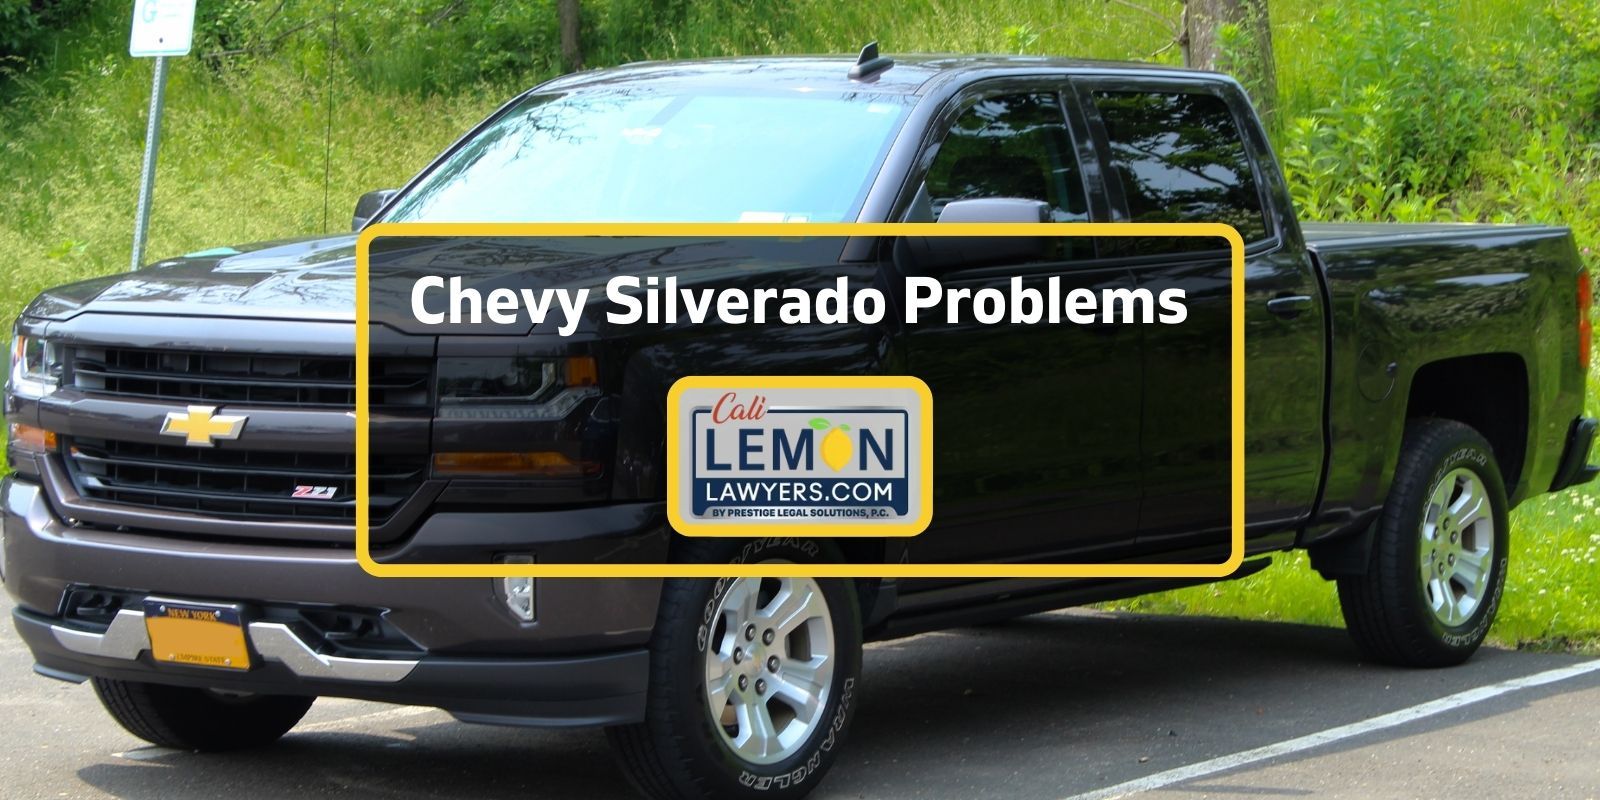 Chevy Silverado problems